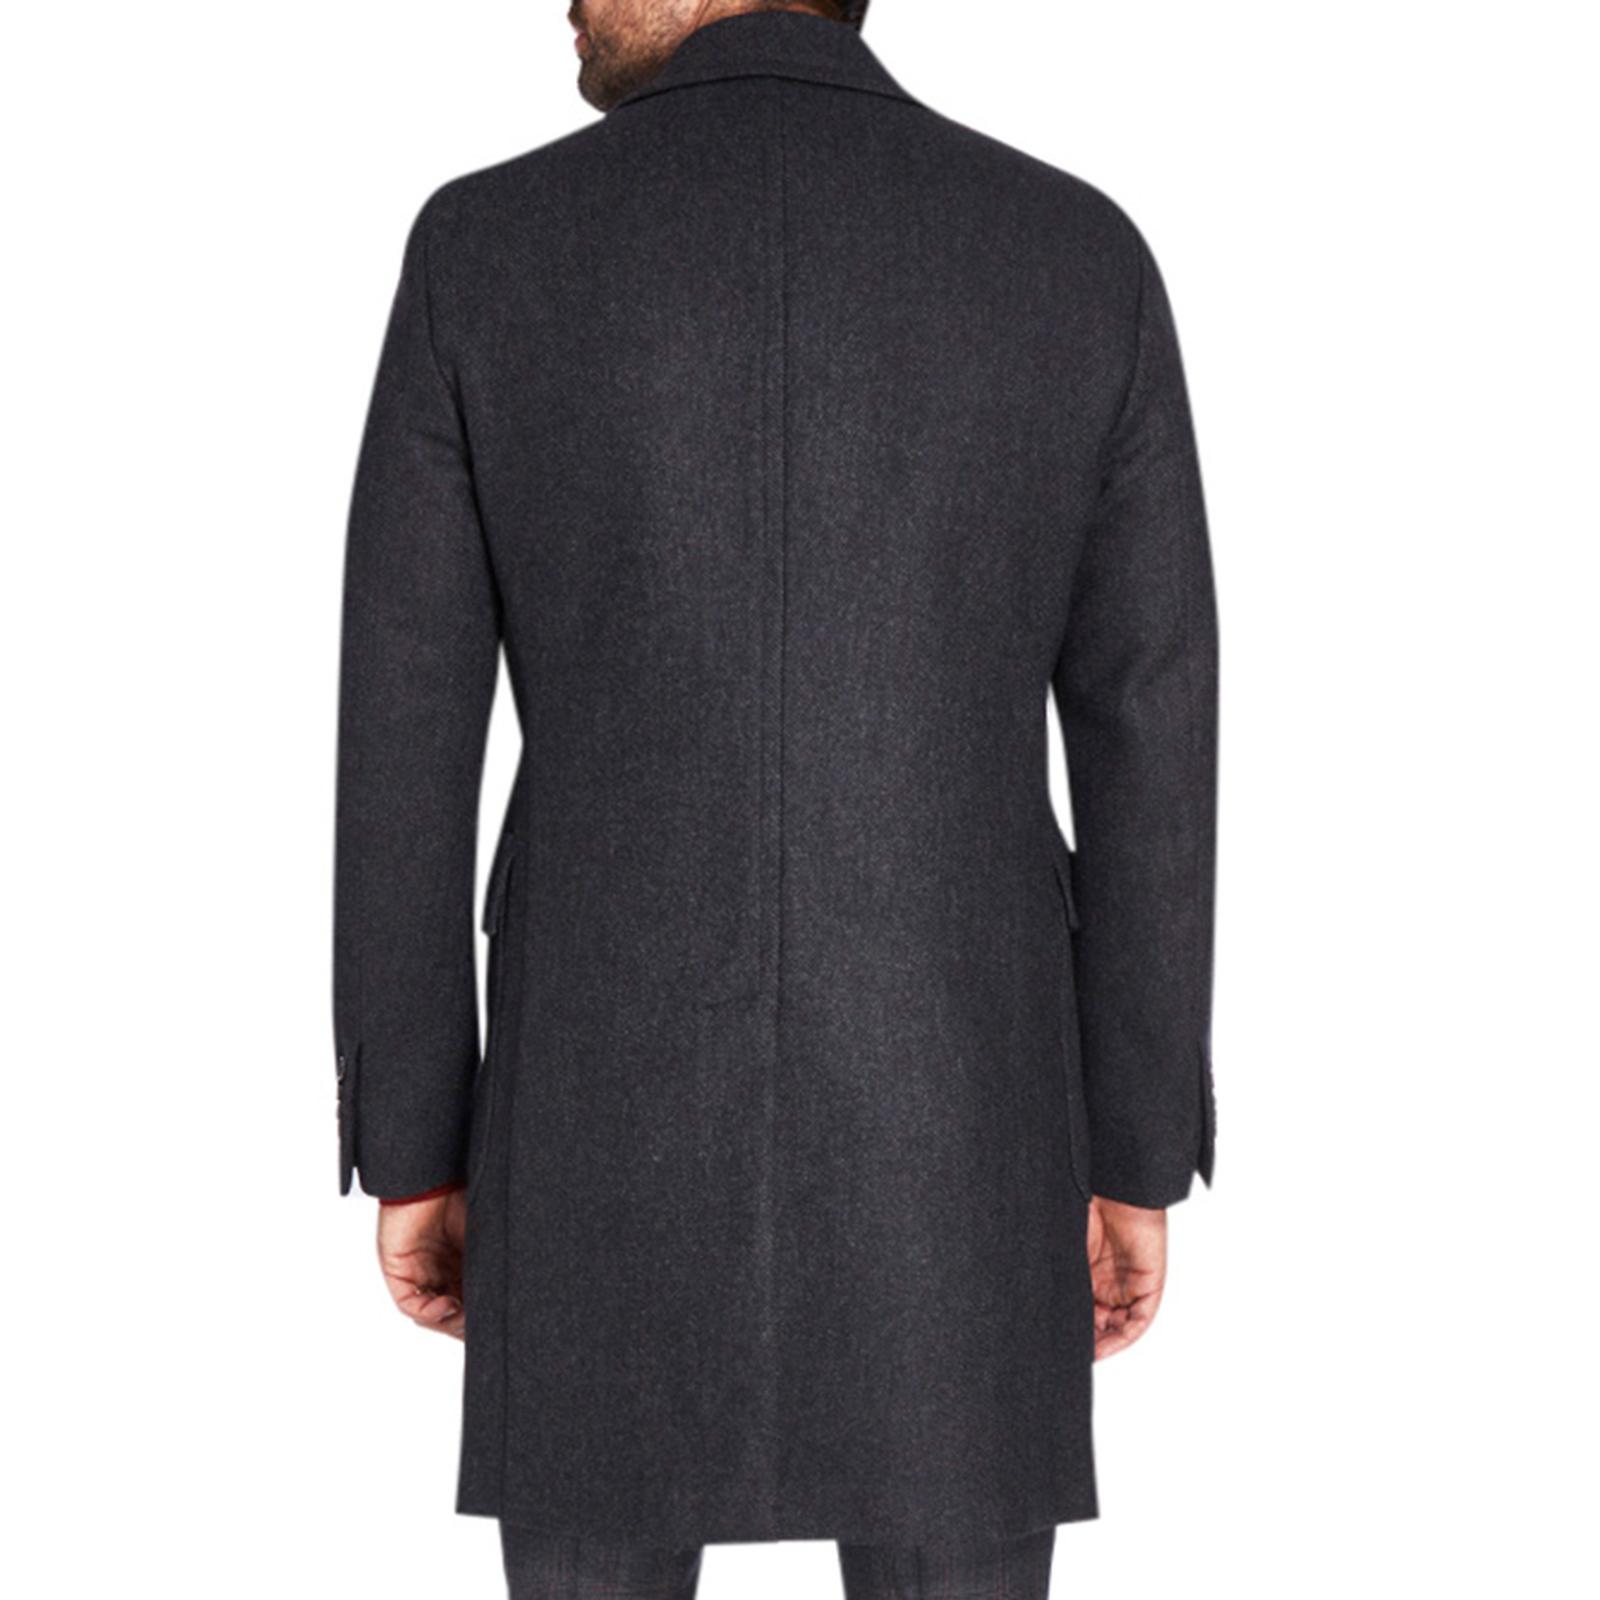 Charcoal Herringbone Wool Overcoat - BrandAlley